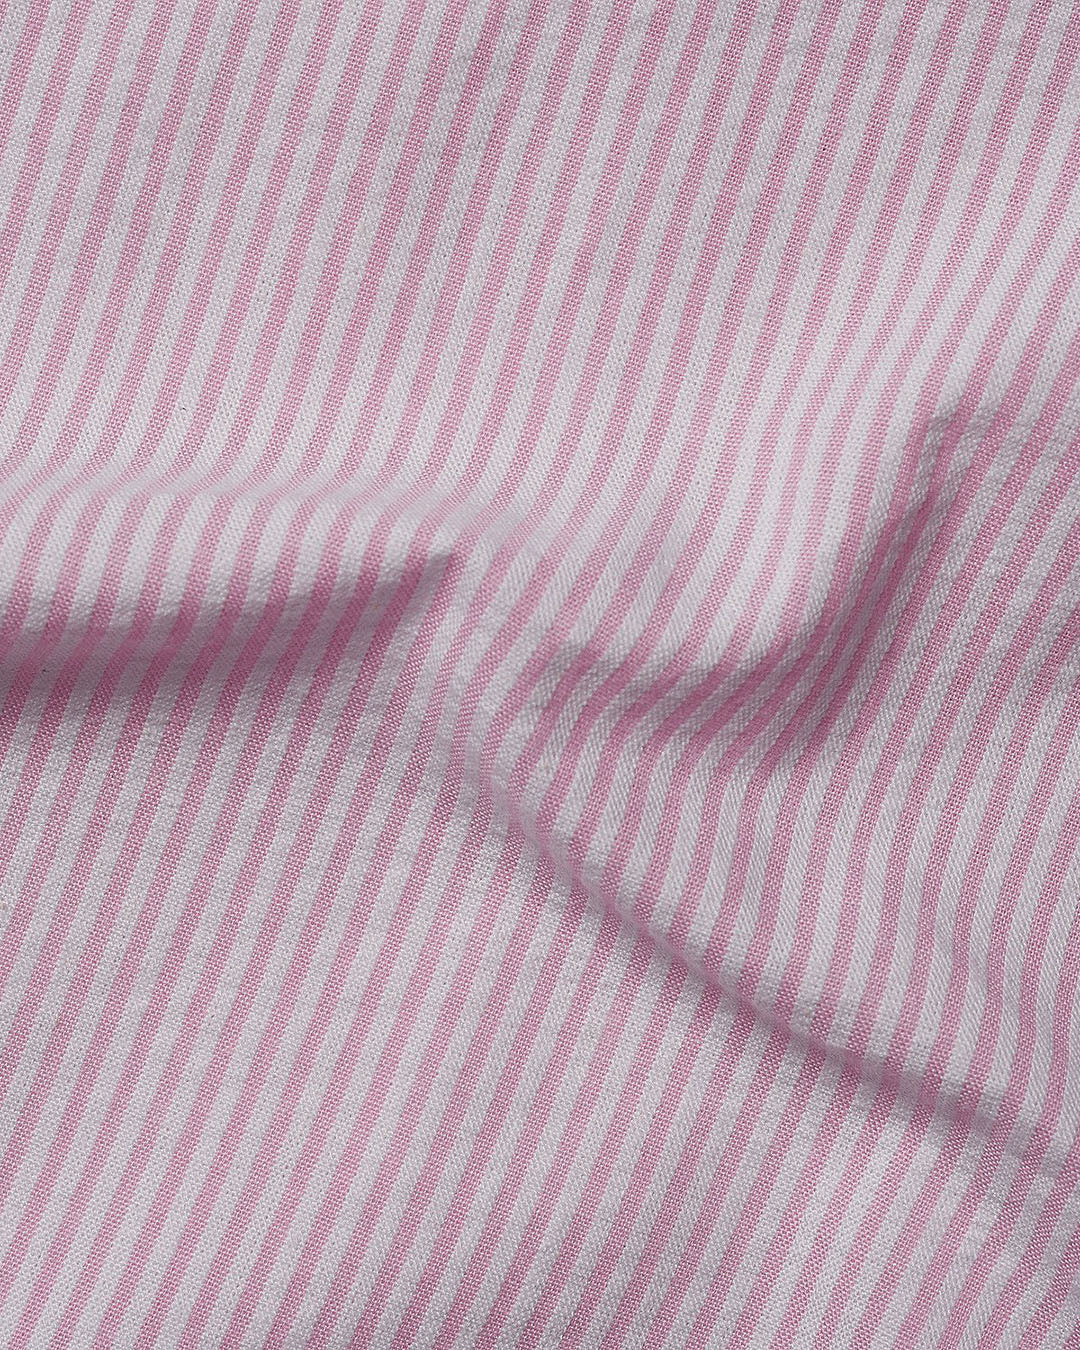 Summer Shirt in Pink White Pin Stripes Seersucker